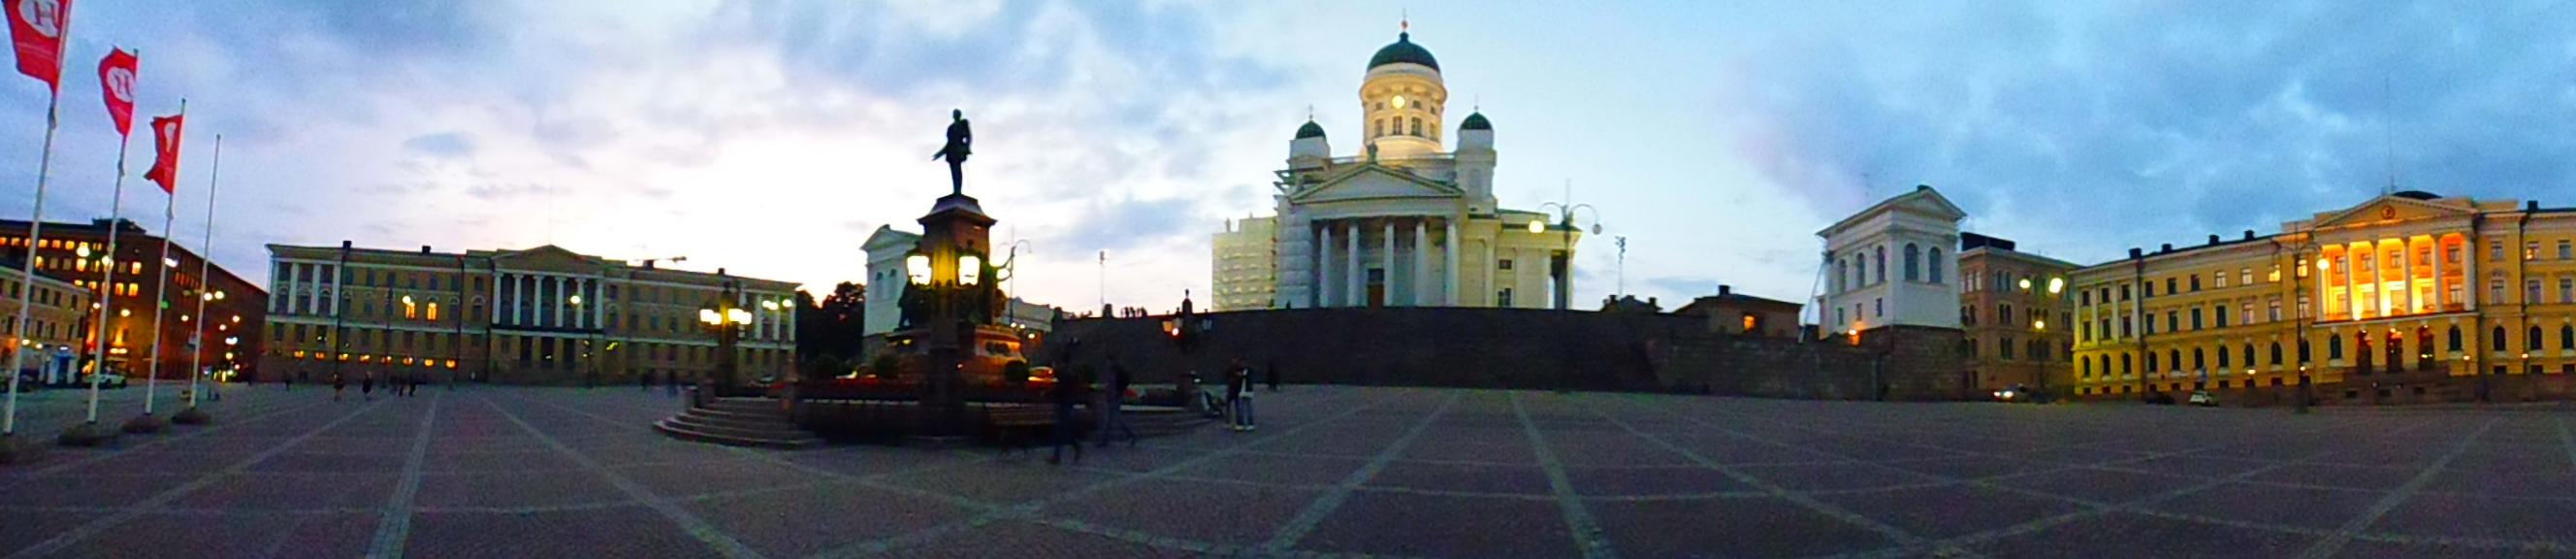 Panorámica de la Plaza del Senado (Senaatintori) (Helsinki) (Finlandia) (@mibaulviajero)